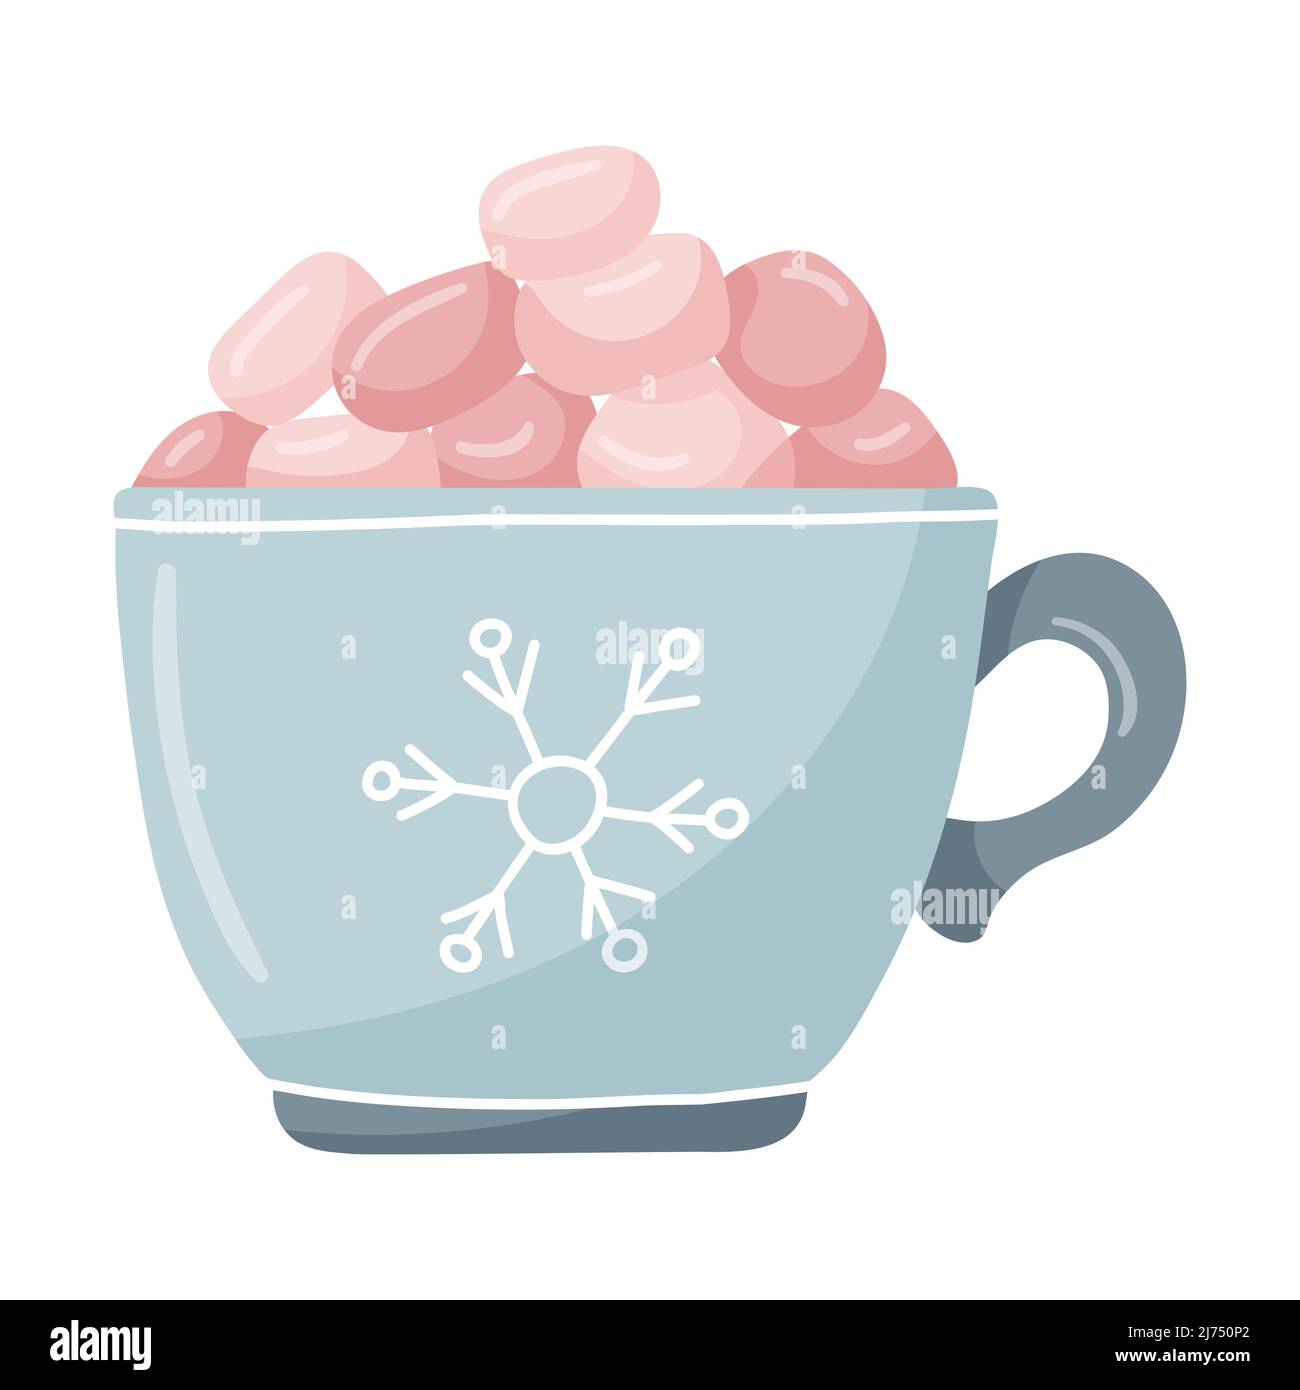 Ein blauer Becher mit Schneeflocke und rosa Sumpflaibchen. Handgezeichnete flache Winterschale mit heißem Getränk. Das Designelement ist auf einem weißen Hintergrund isoliert. Co Stock Vektor